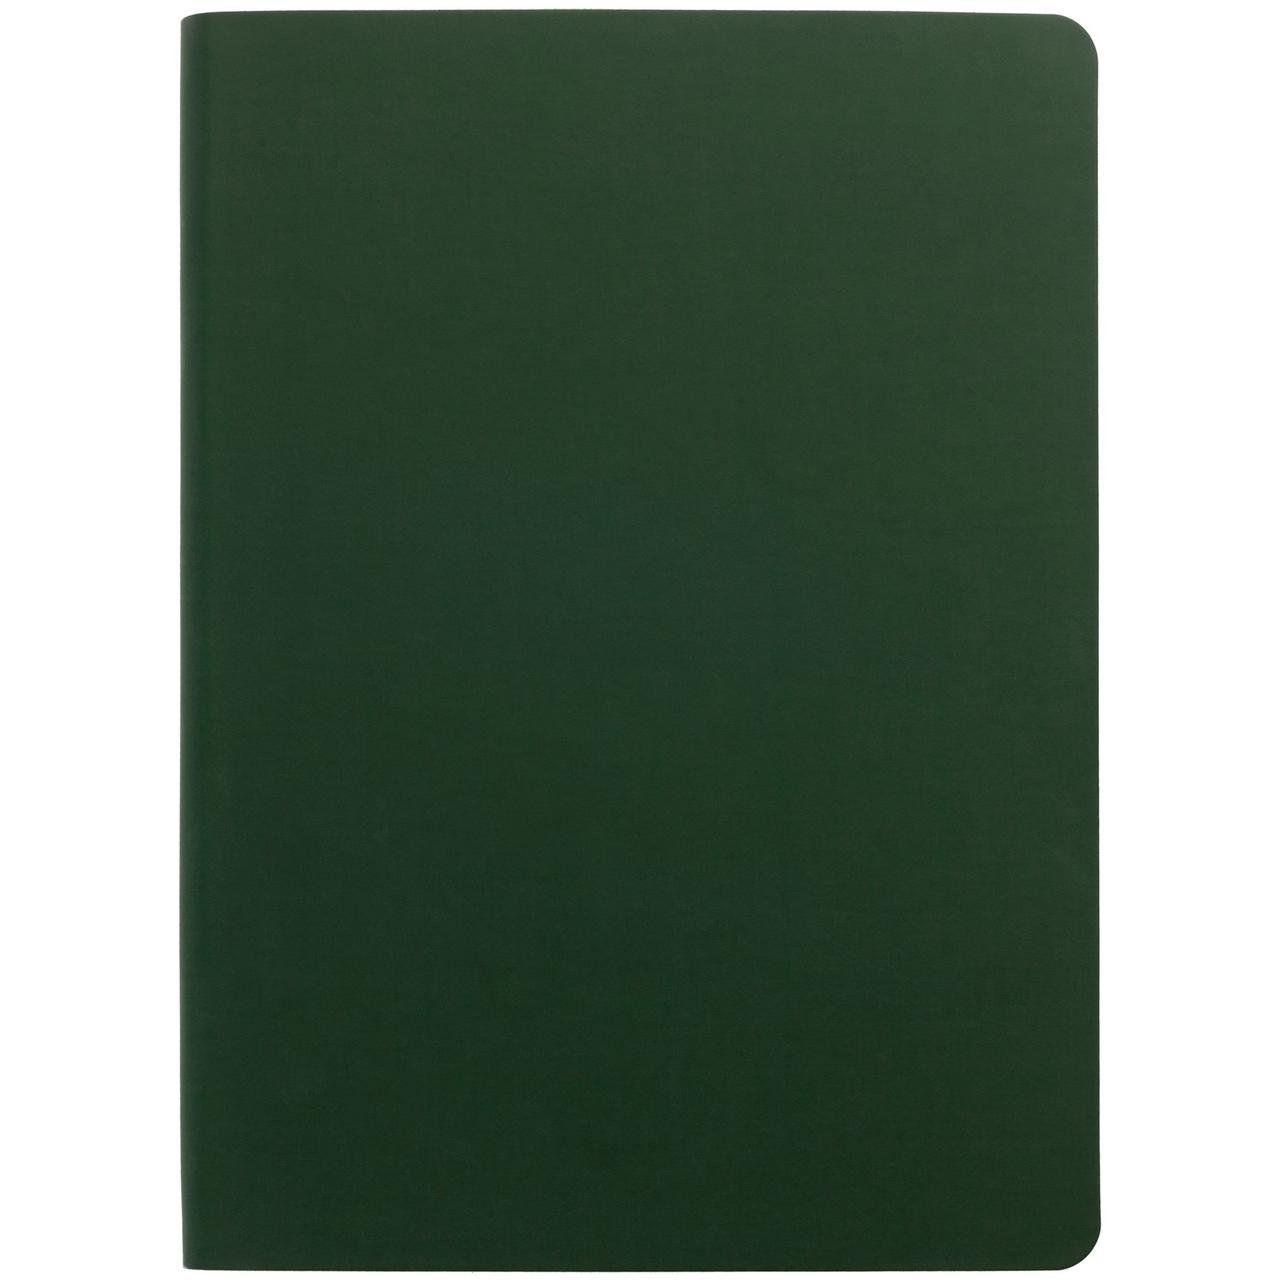 Ежедневник Flex Shall, недатированный, зеленый (артикул 7881.99), фото 1